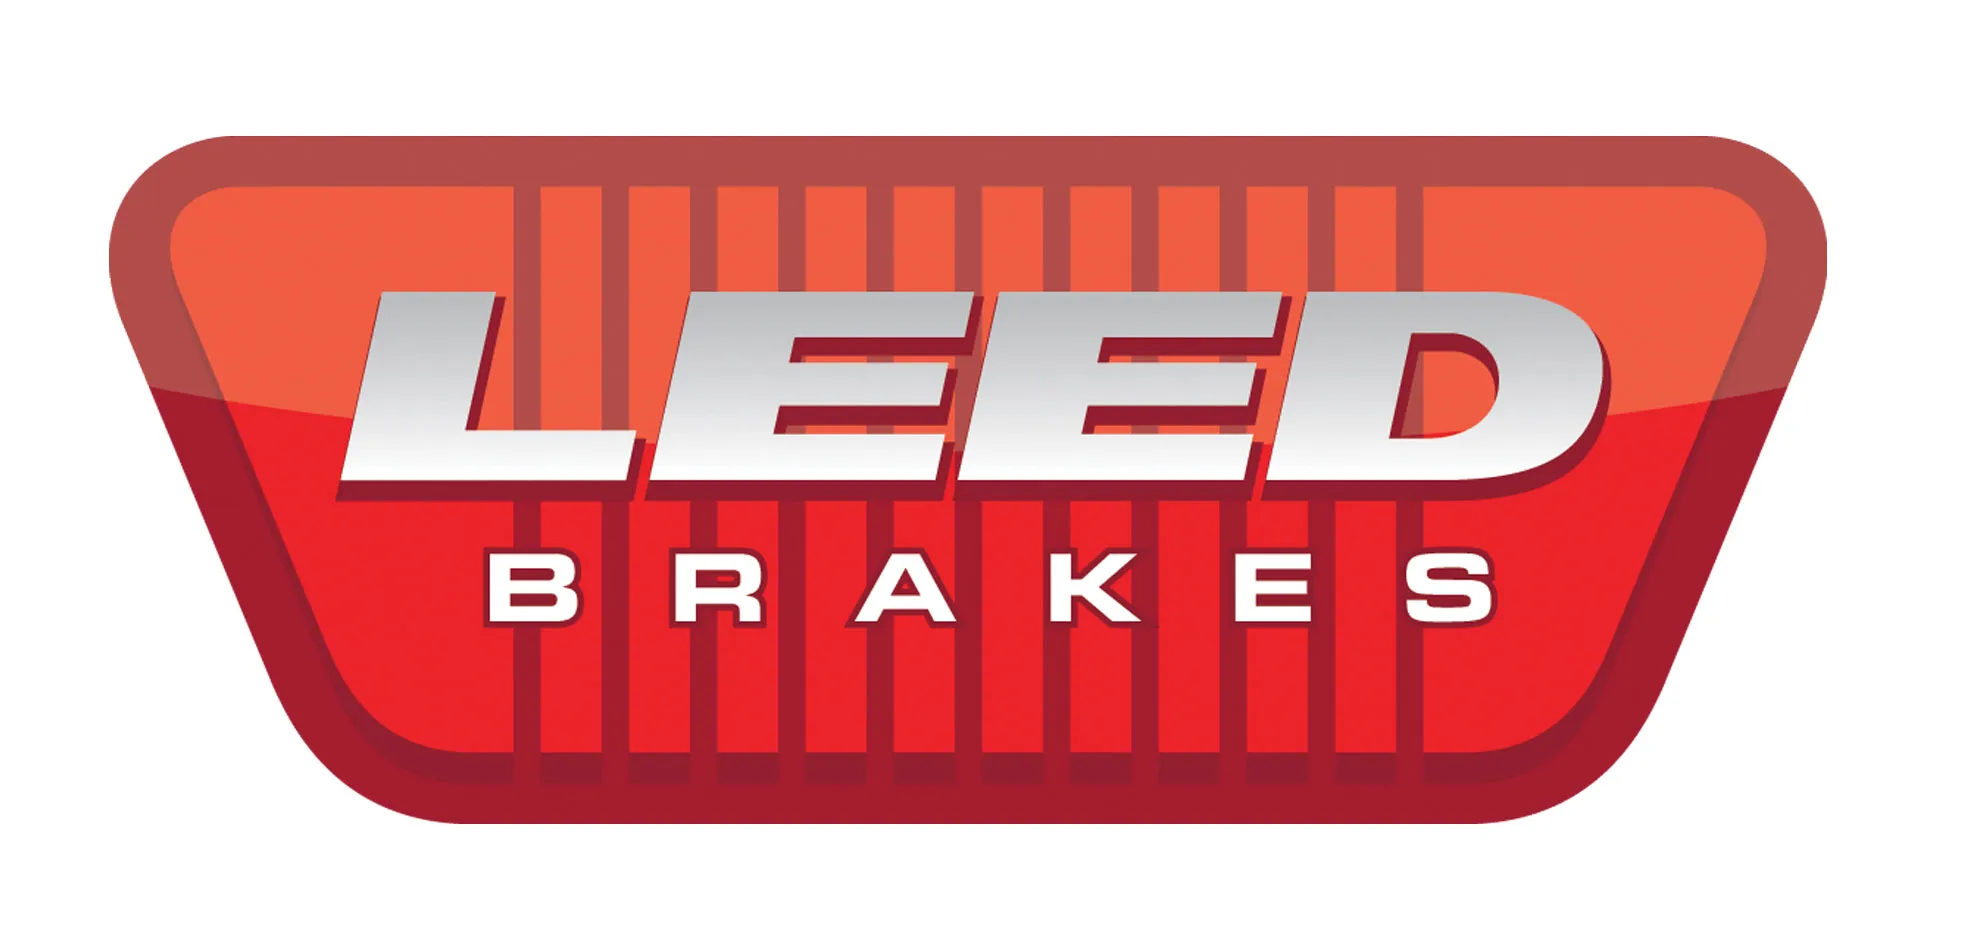 Leed's logo